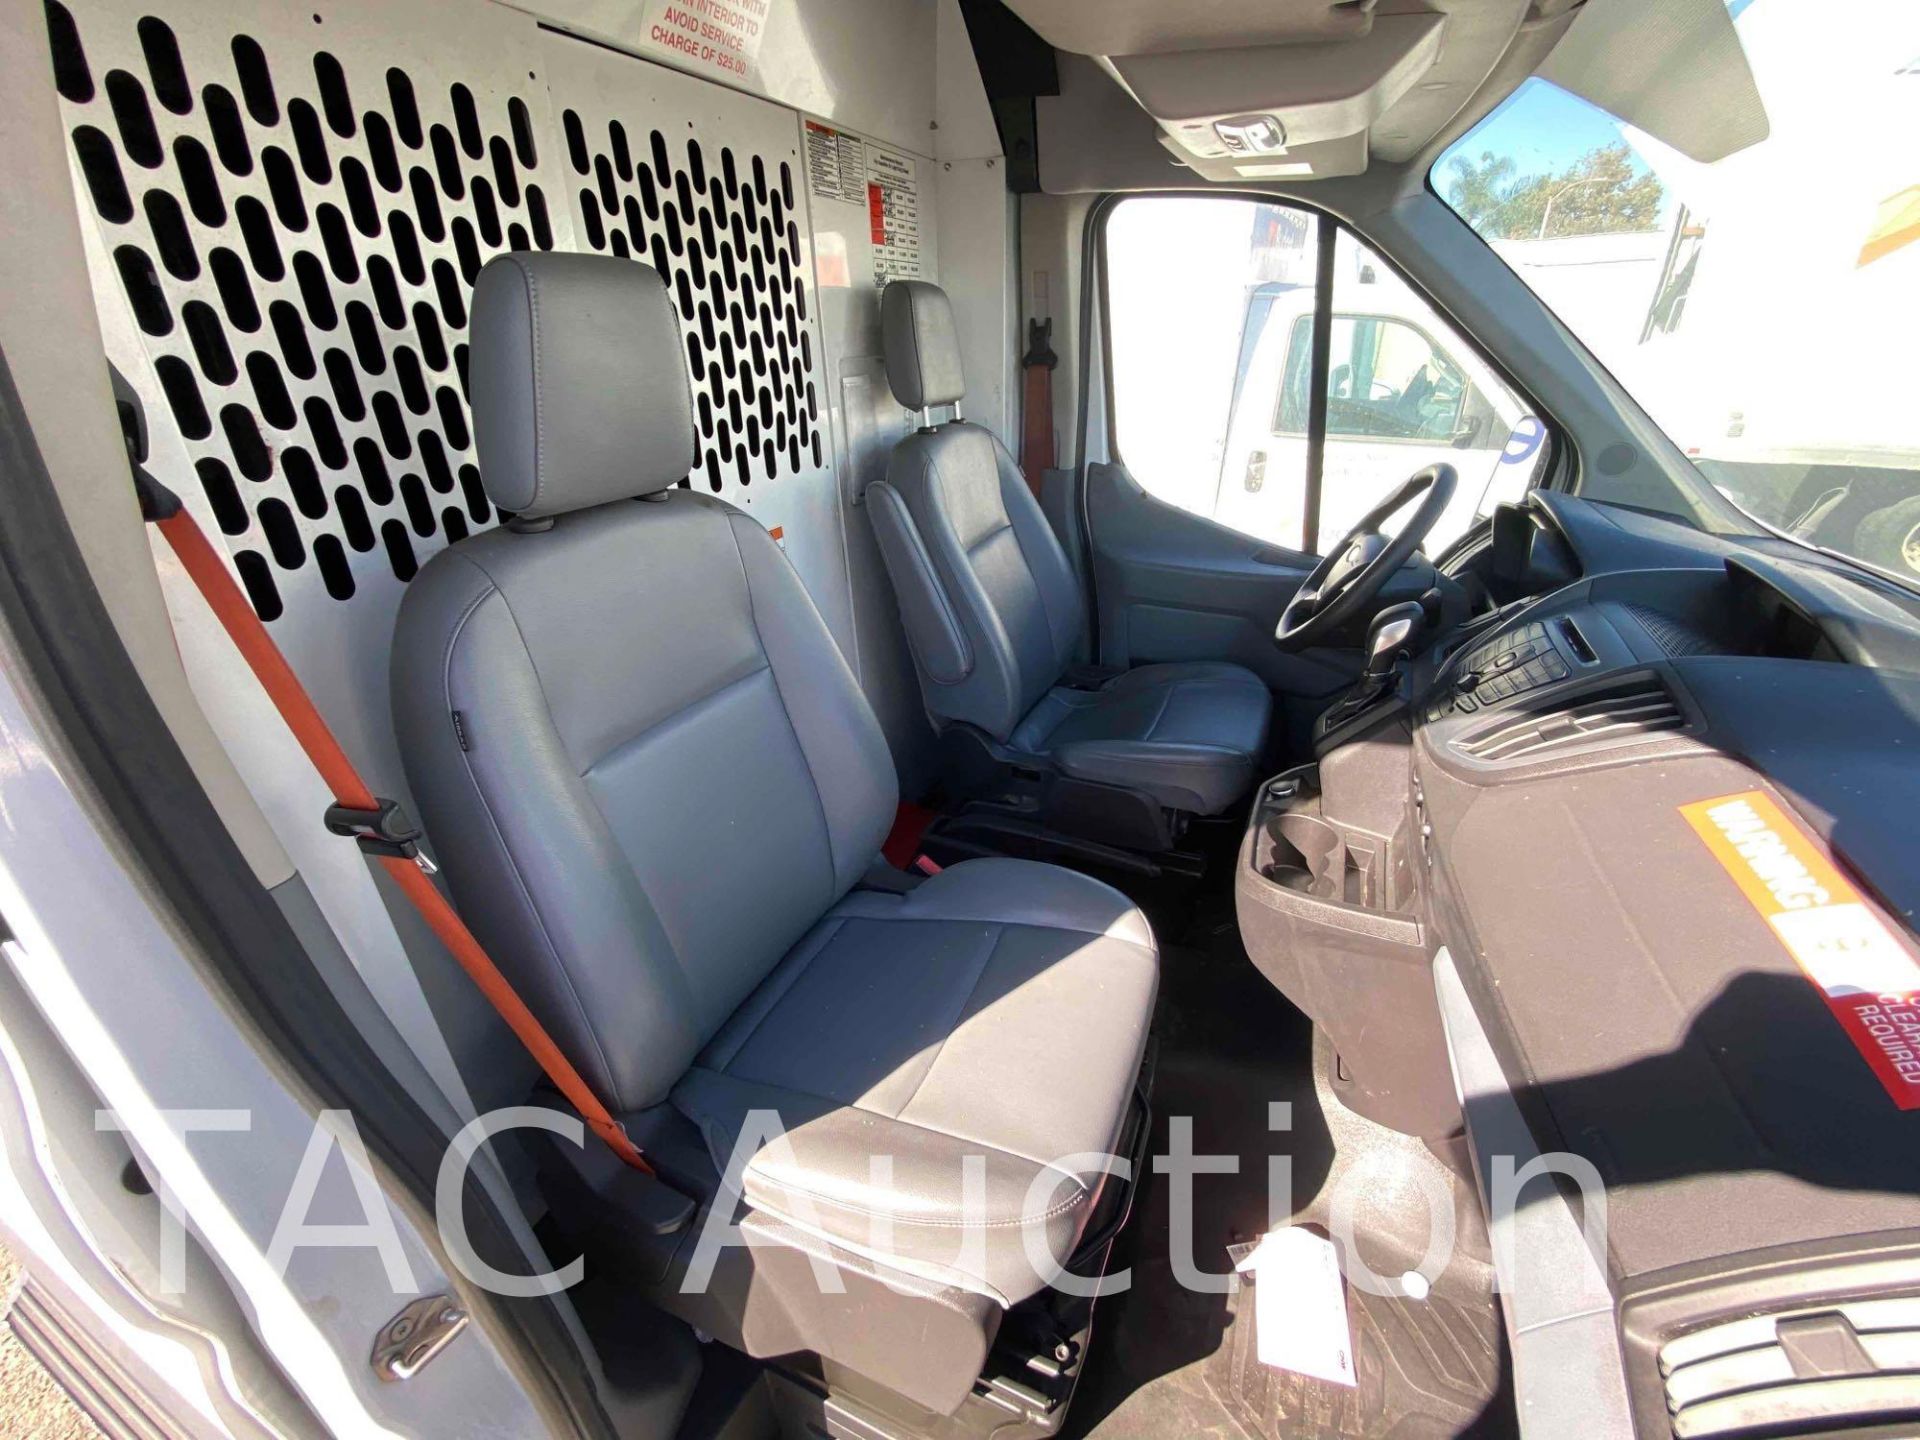 2019 Ford Transit 150 Cargo Van - Image 28 of 56